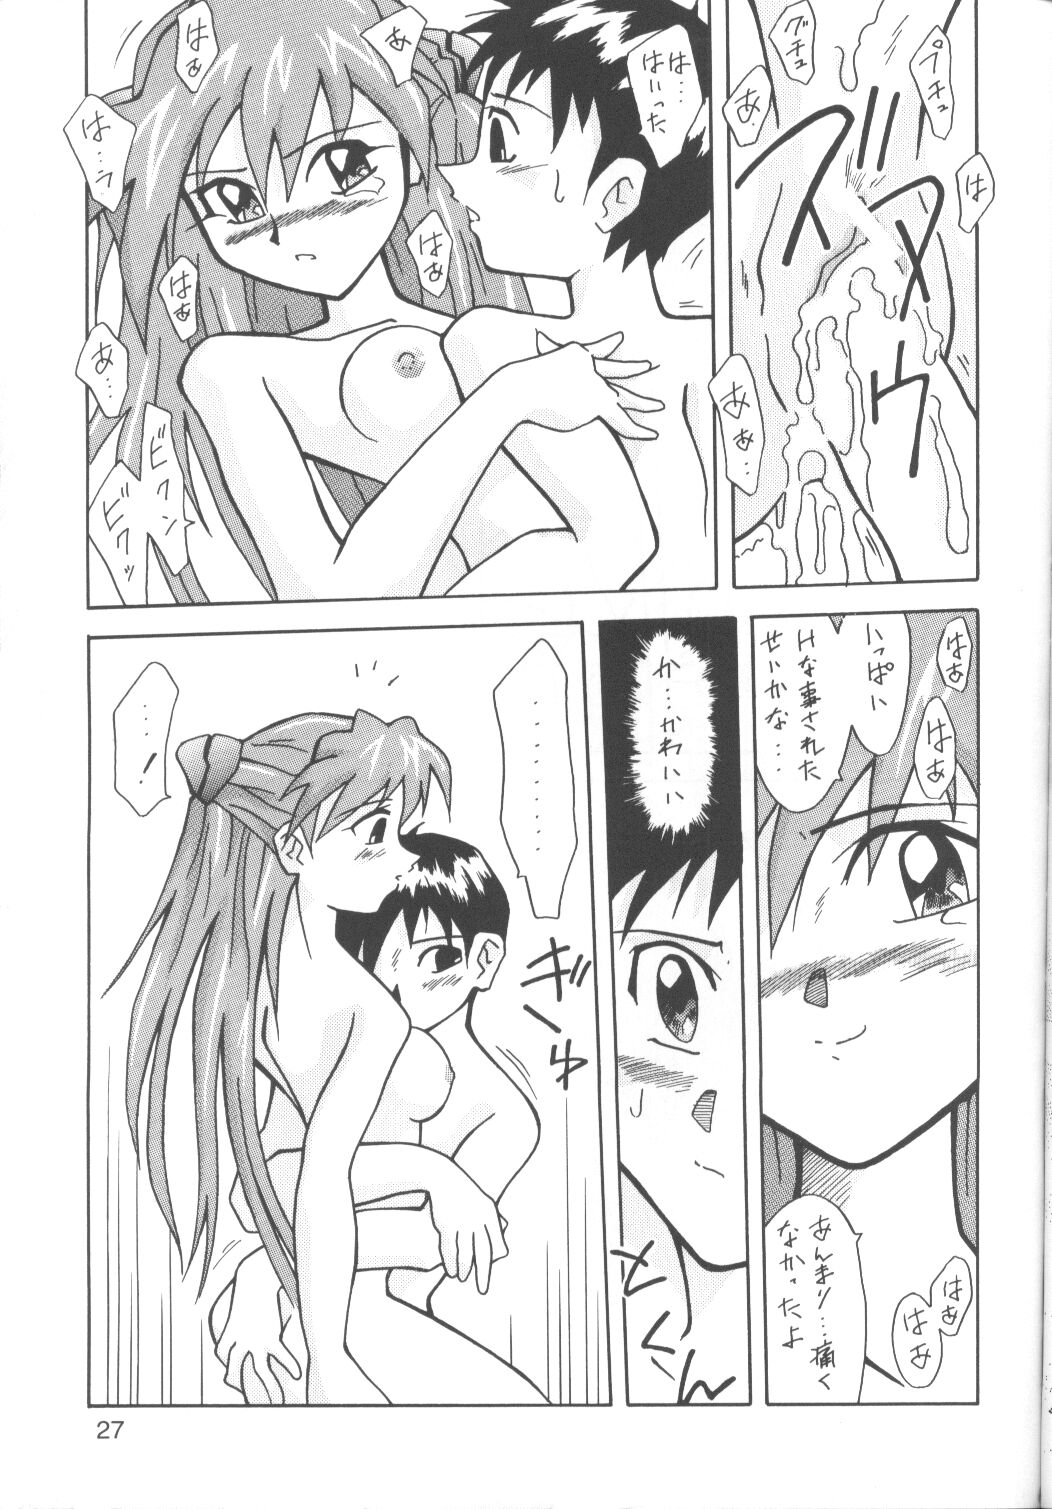 Asuka-bon 2 page 26 full